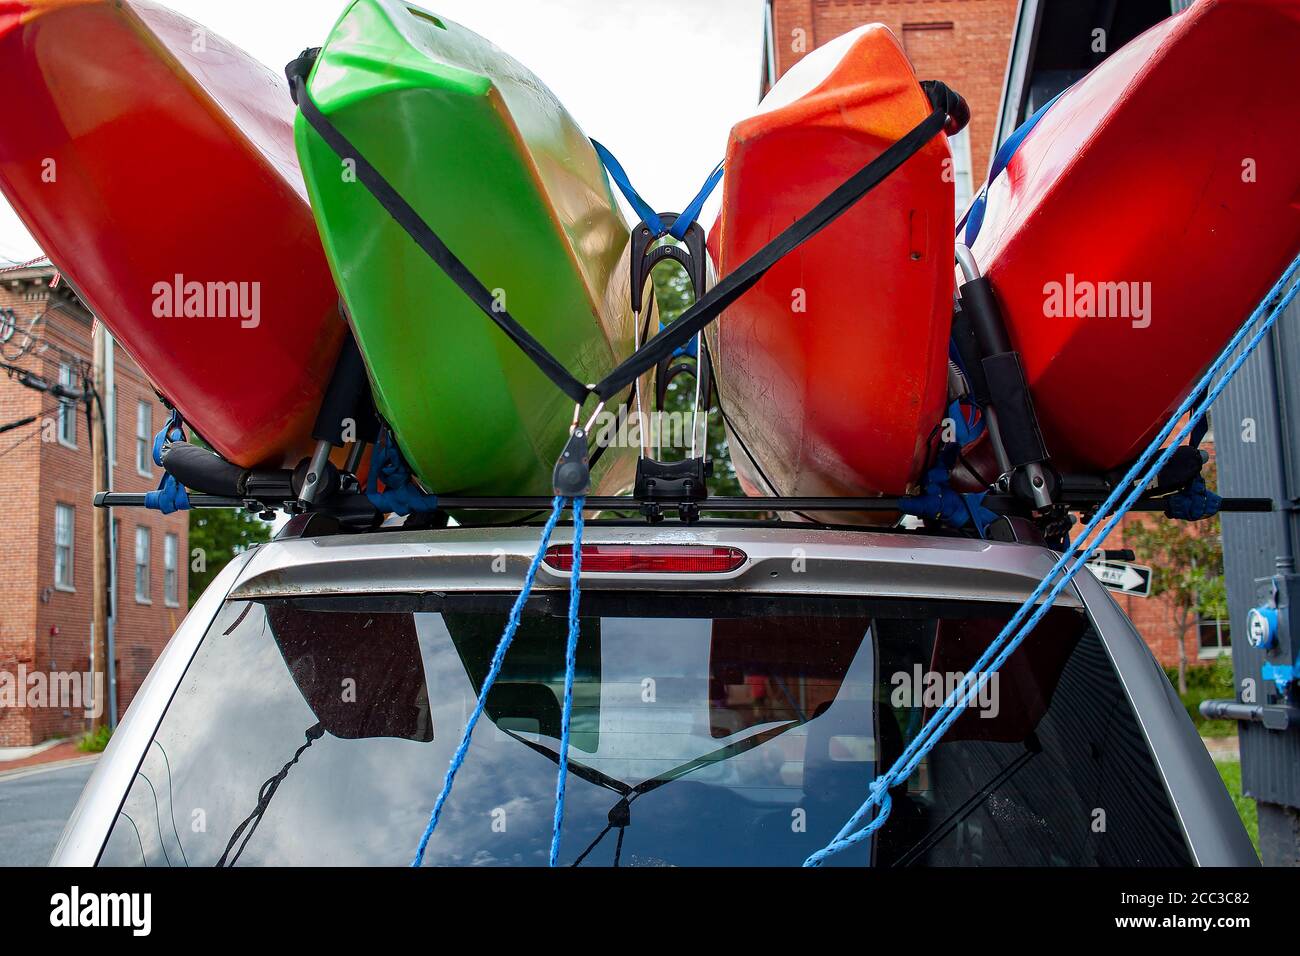 Primo piano, profondità di campo poco profonda, immagine di vista  dell'occhio di bug di quattro kayak di dimensioni complete di colore rosso  e verde caricati sulla parte superiore di un'auto SUV utilizzando